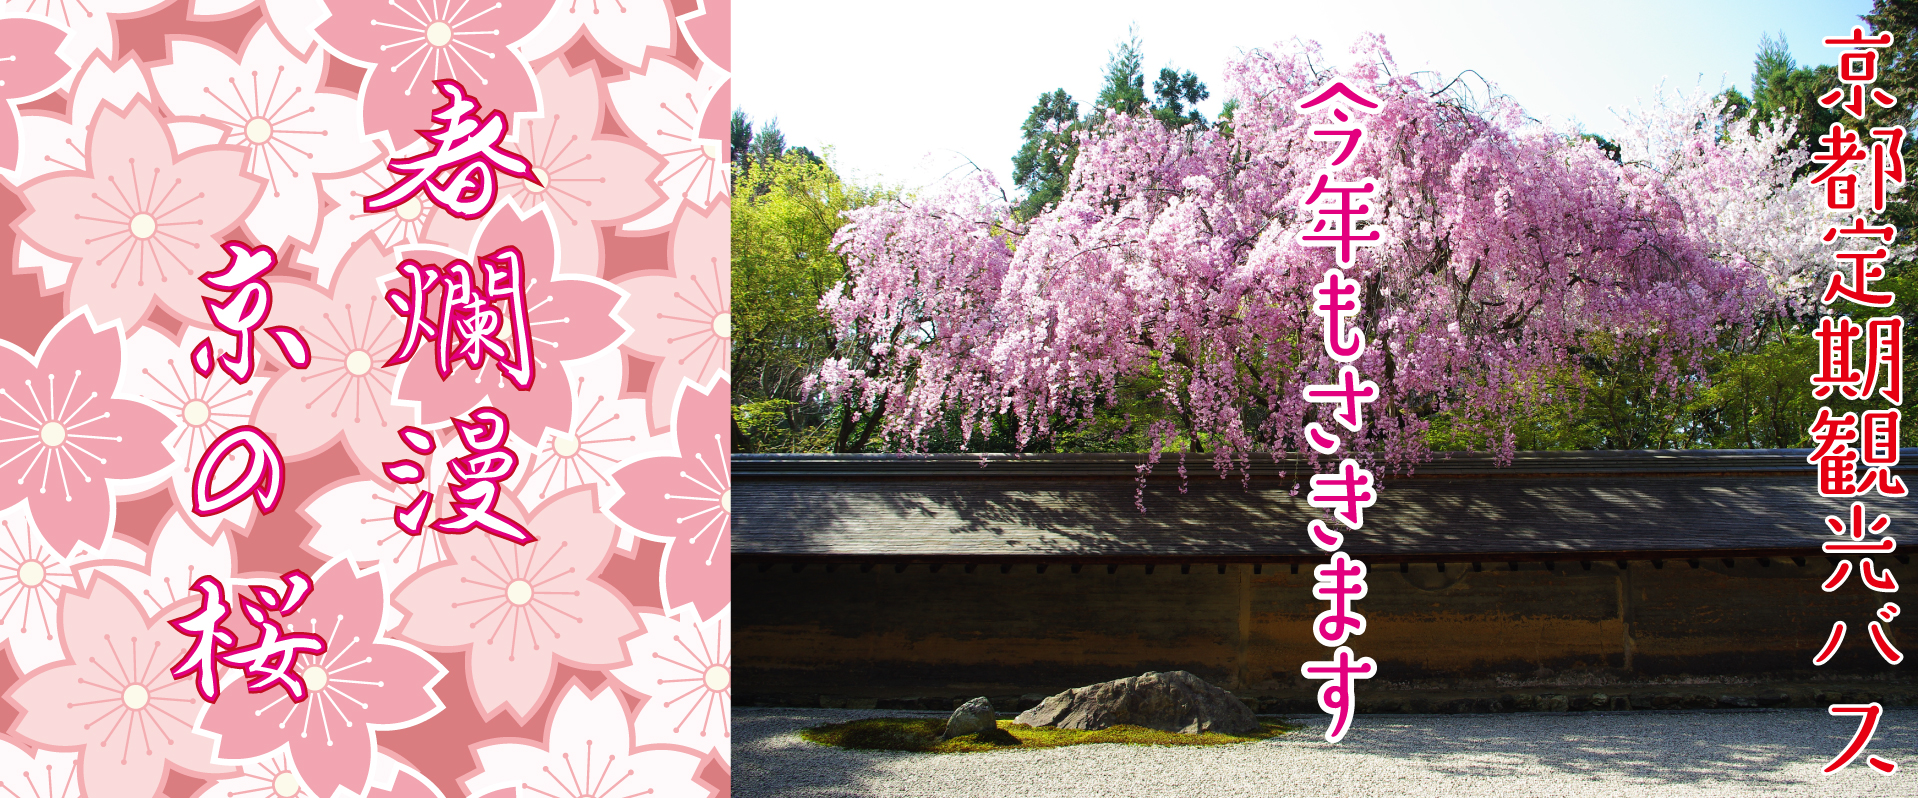 春爛漫、京の桜